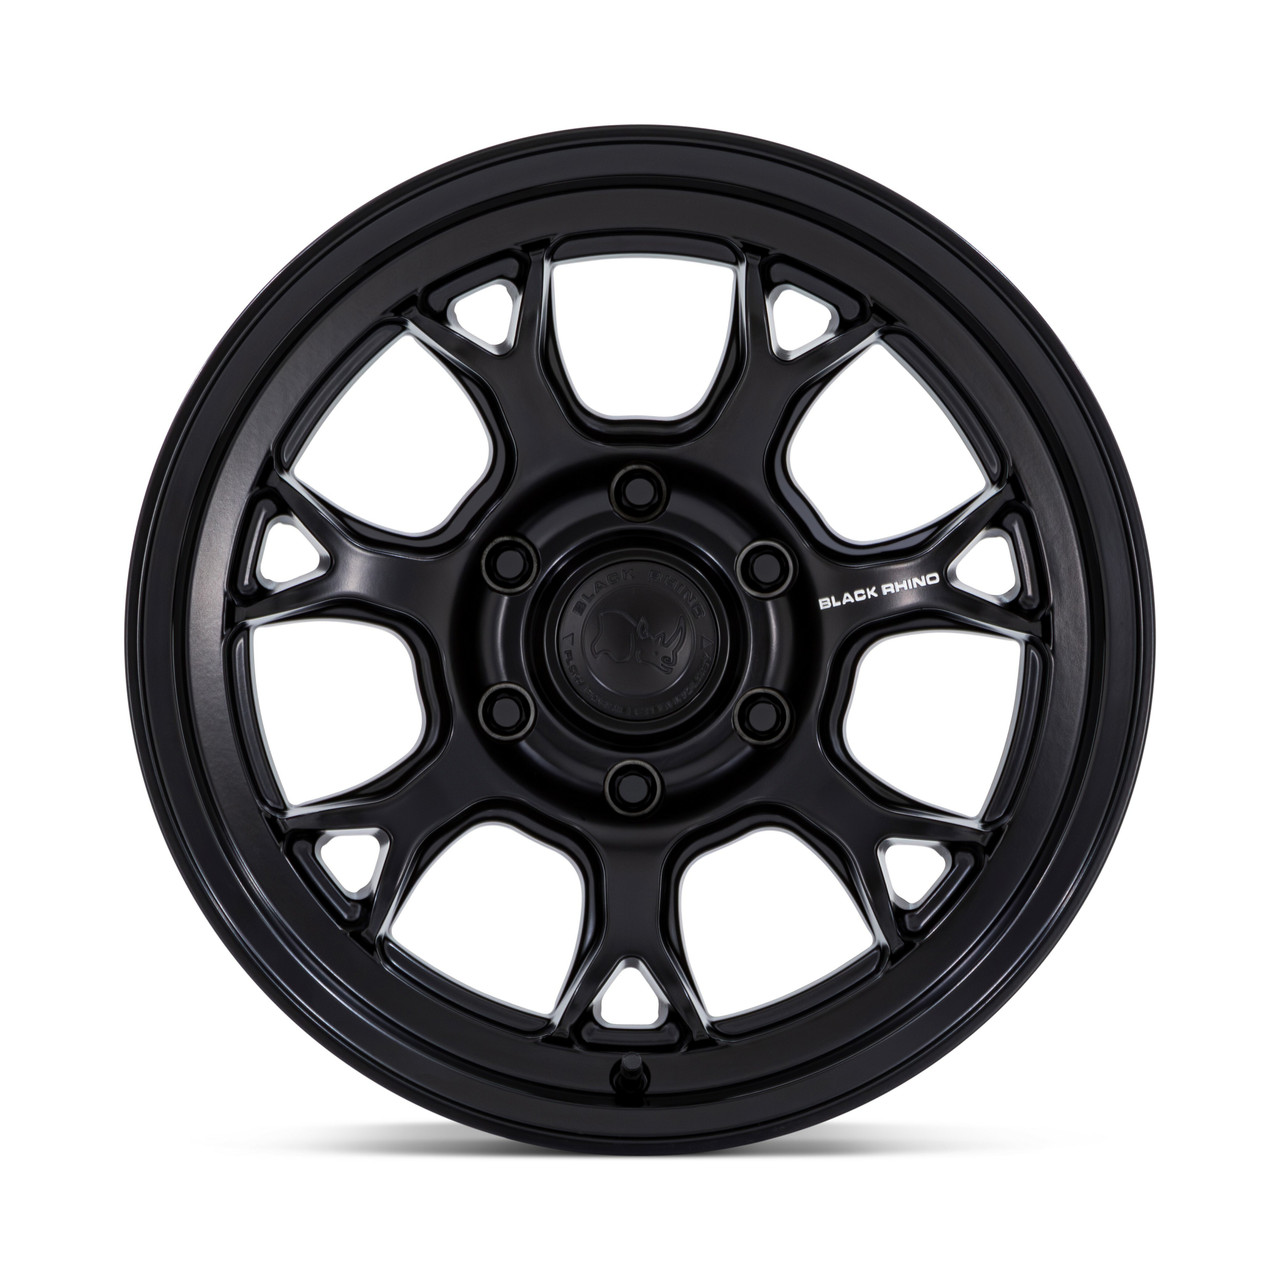 17" Black Rhino BR017 Etosha Matte Black 17x8.5 Wheel 6x120 20mm For Chevy GMC